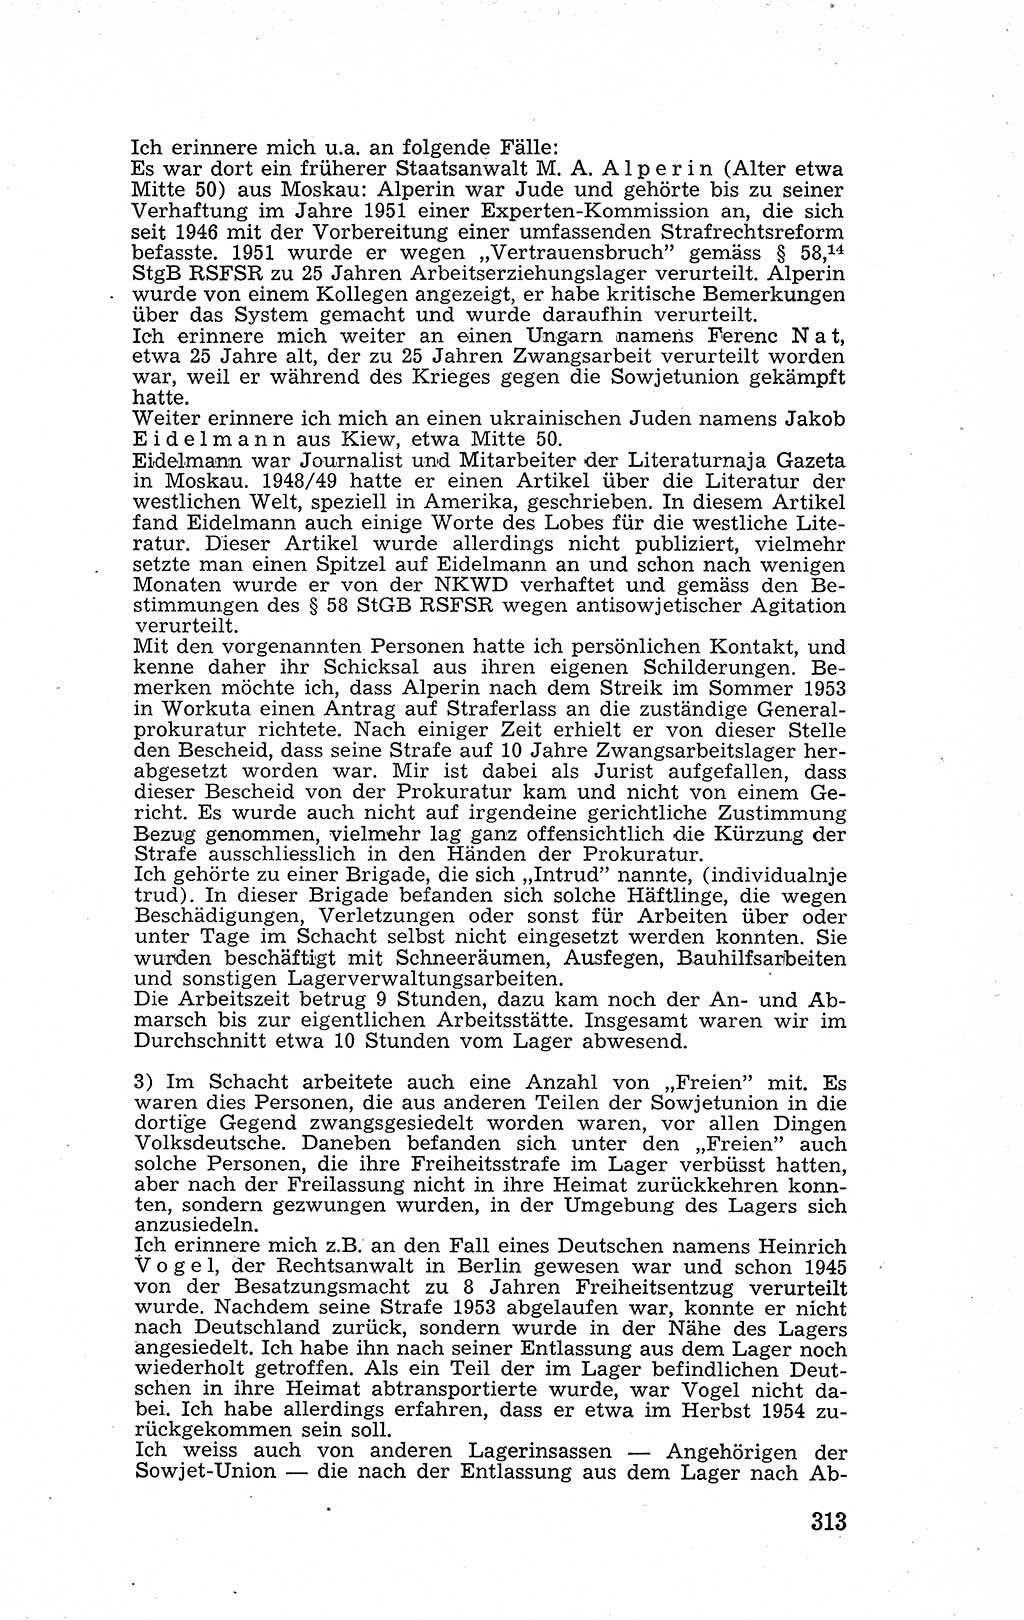 Recht in Fesseln, Dokumente, Internationale Juristen-Kommission [Bundesrepublik Deutschland (BRD)] 1955, Seite 313 (R. Dok. IJK BRD 1955, S. 313)